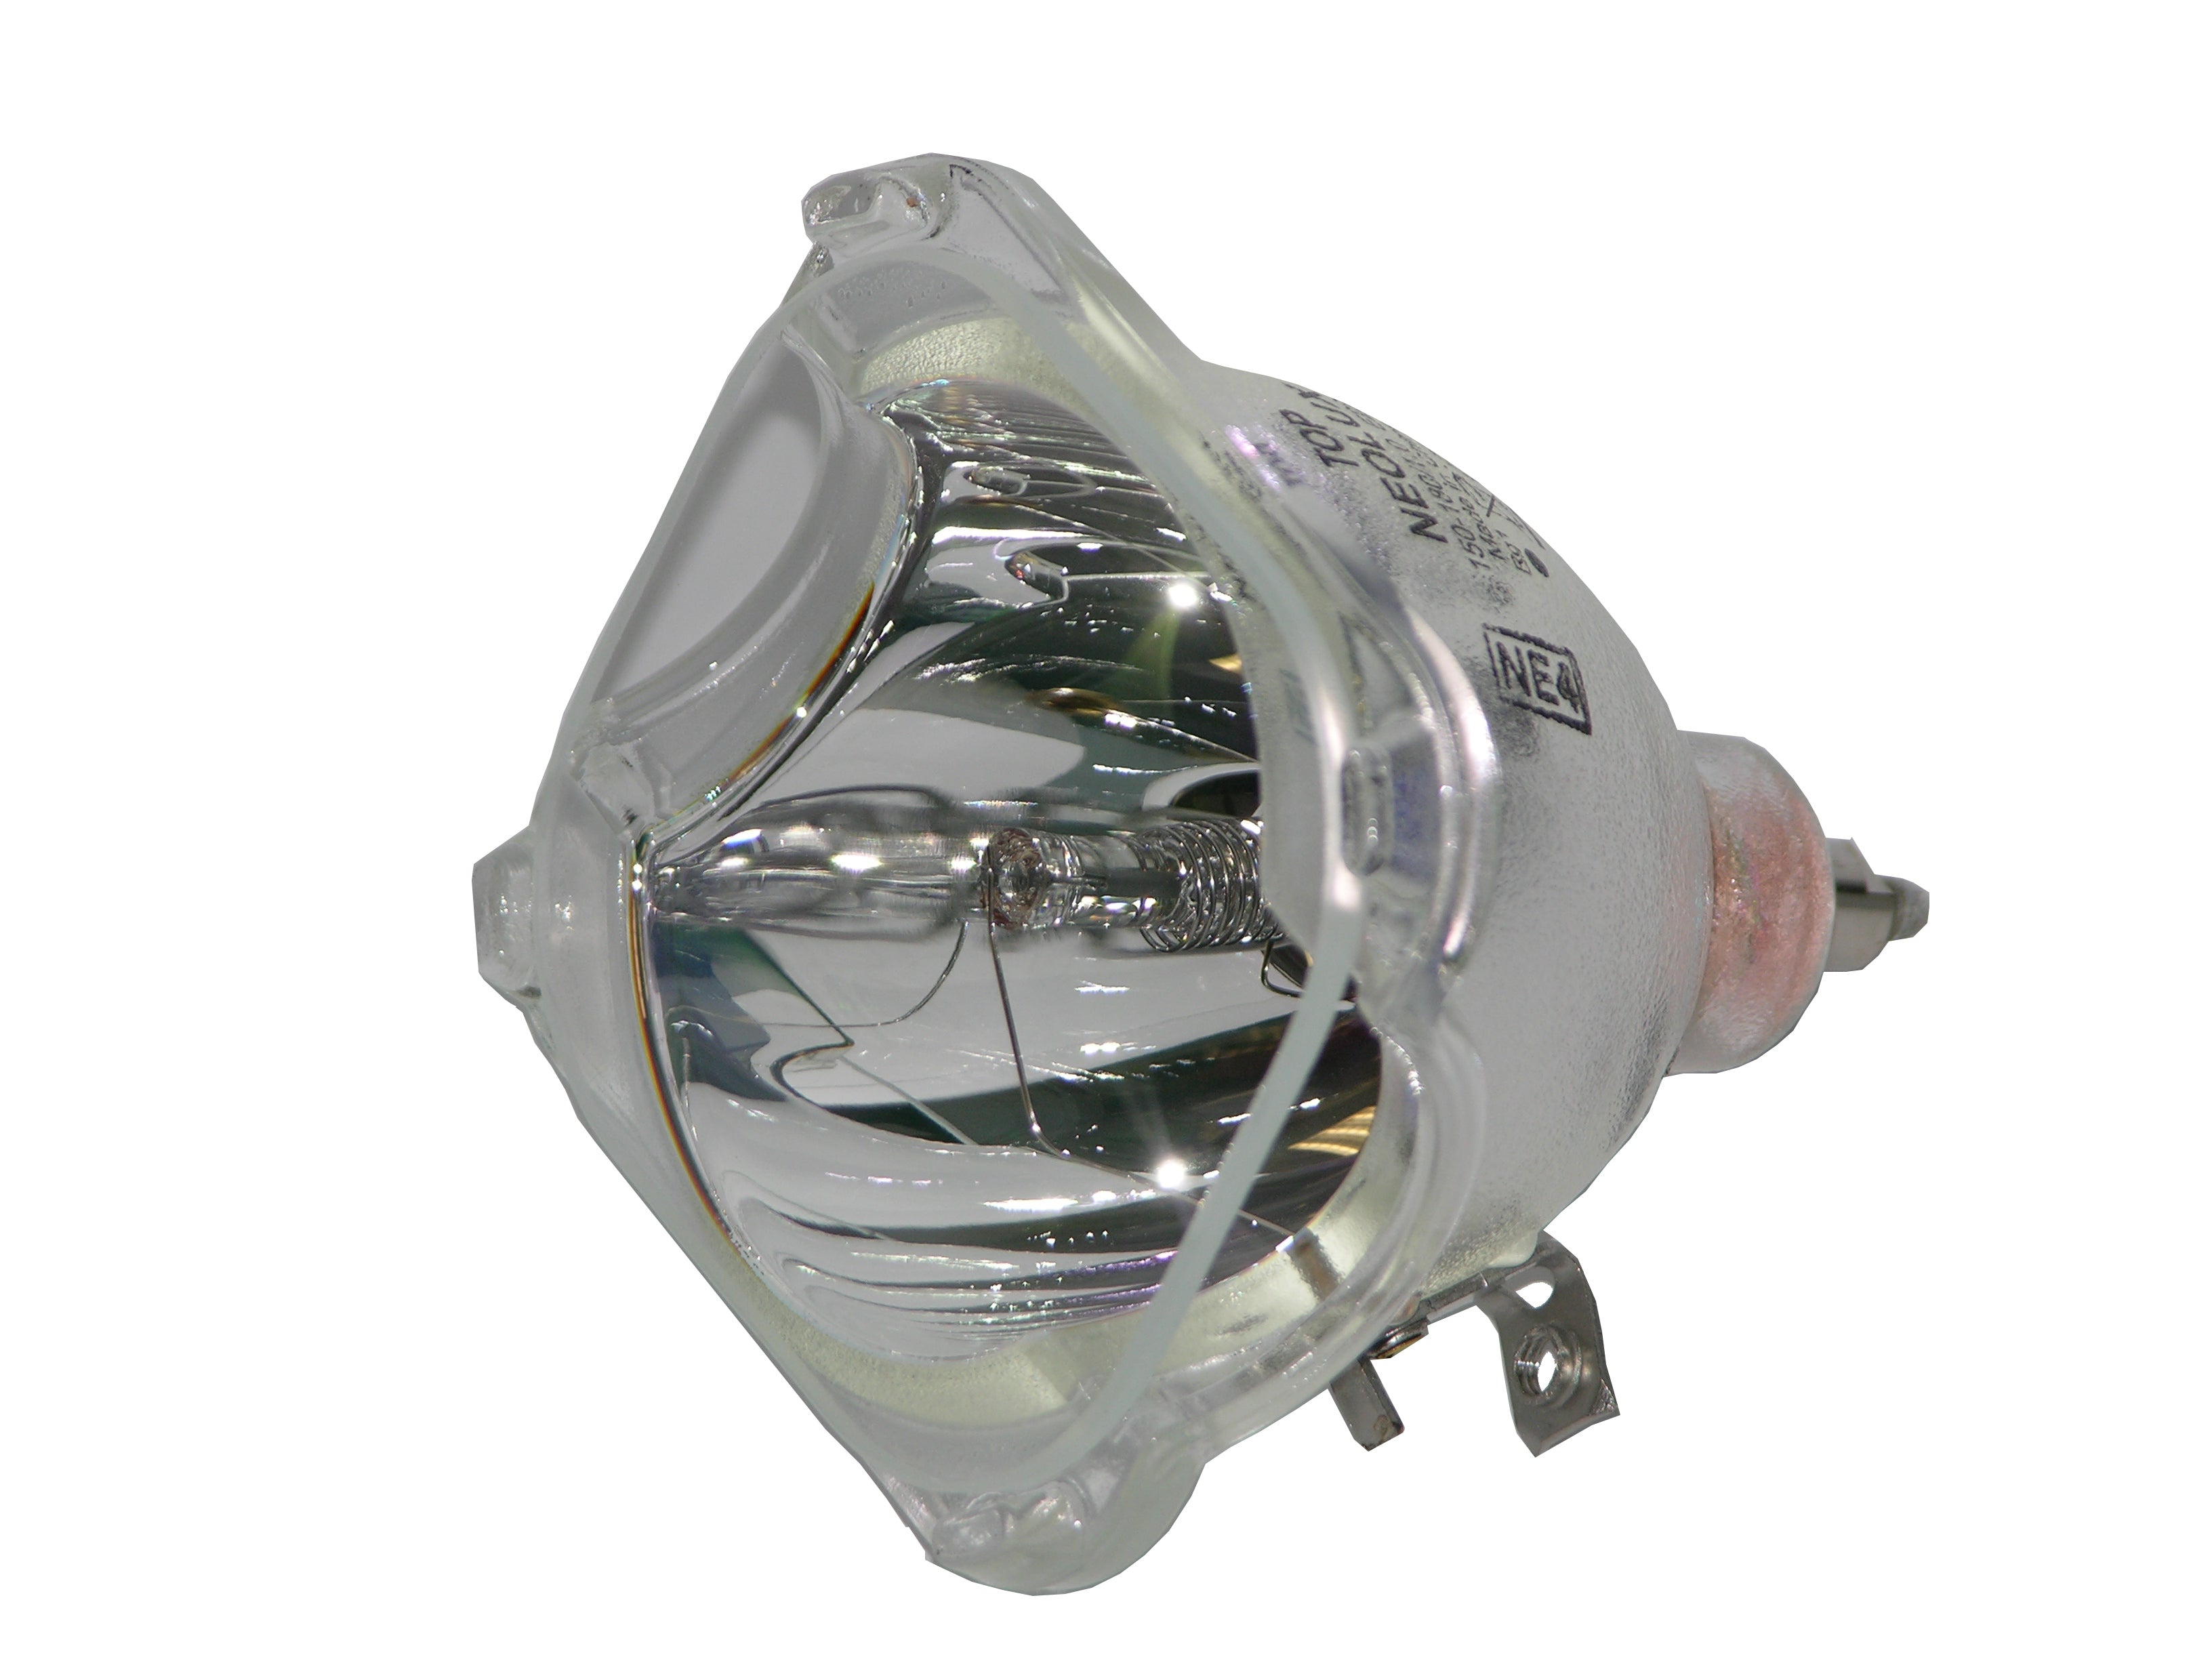 Neolux DLP Lamp, Neolux DLP Lamp RP-E022-4 E22 LAMP 5KV 150/180 NEOLUX 69073, used on: 915B403001 915B441001 915B455011 915B455012 915P049020 915P061010